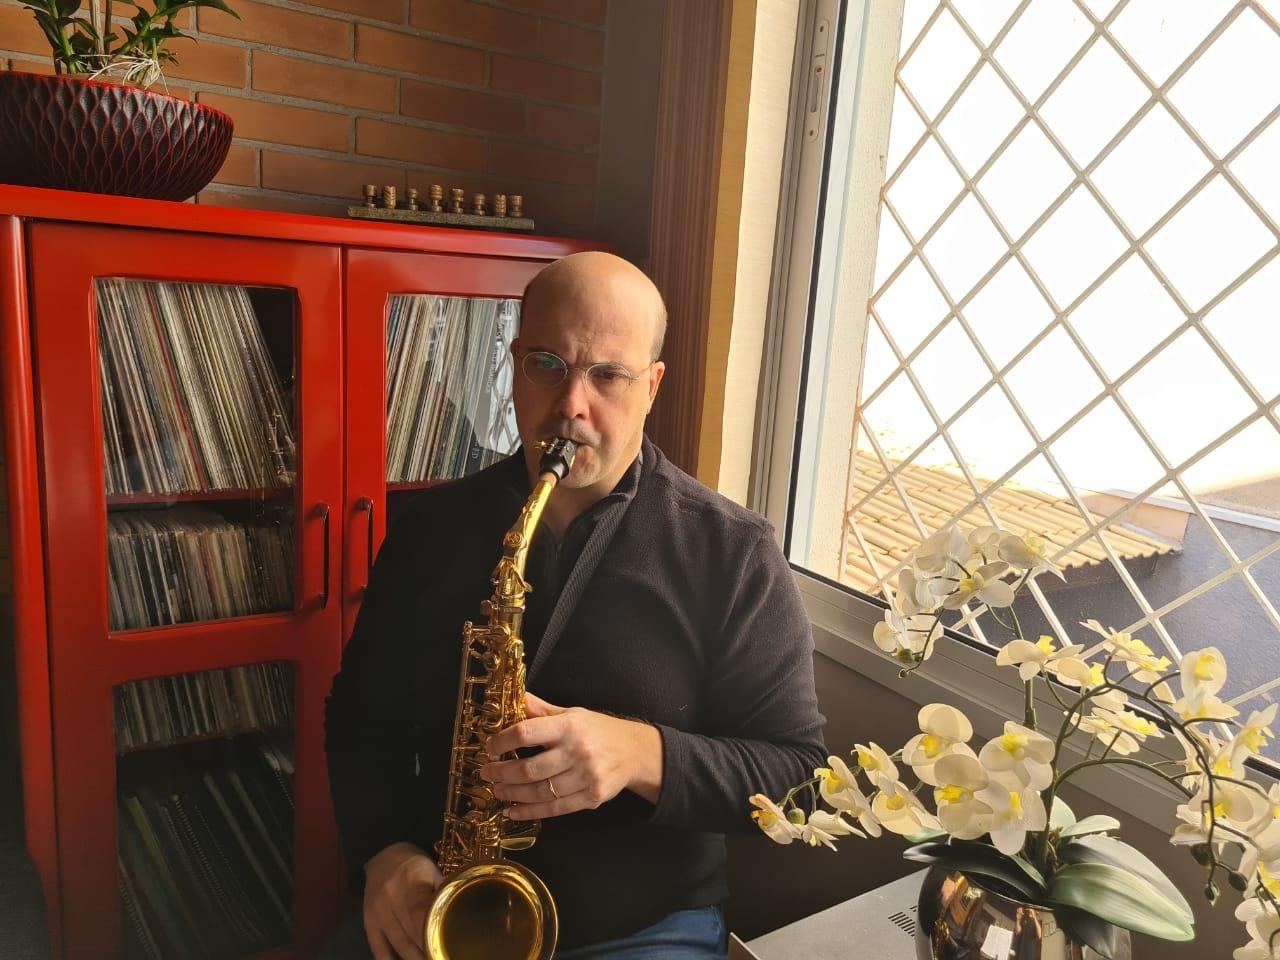 Saxofonista vence a Covid-19 com a ajuda da música